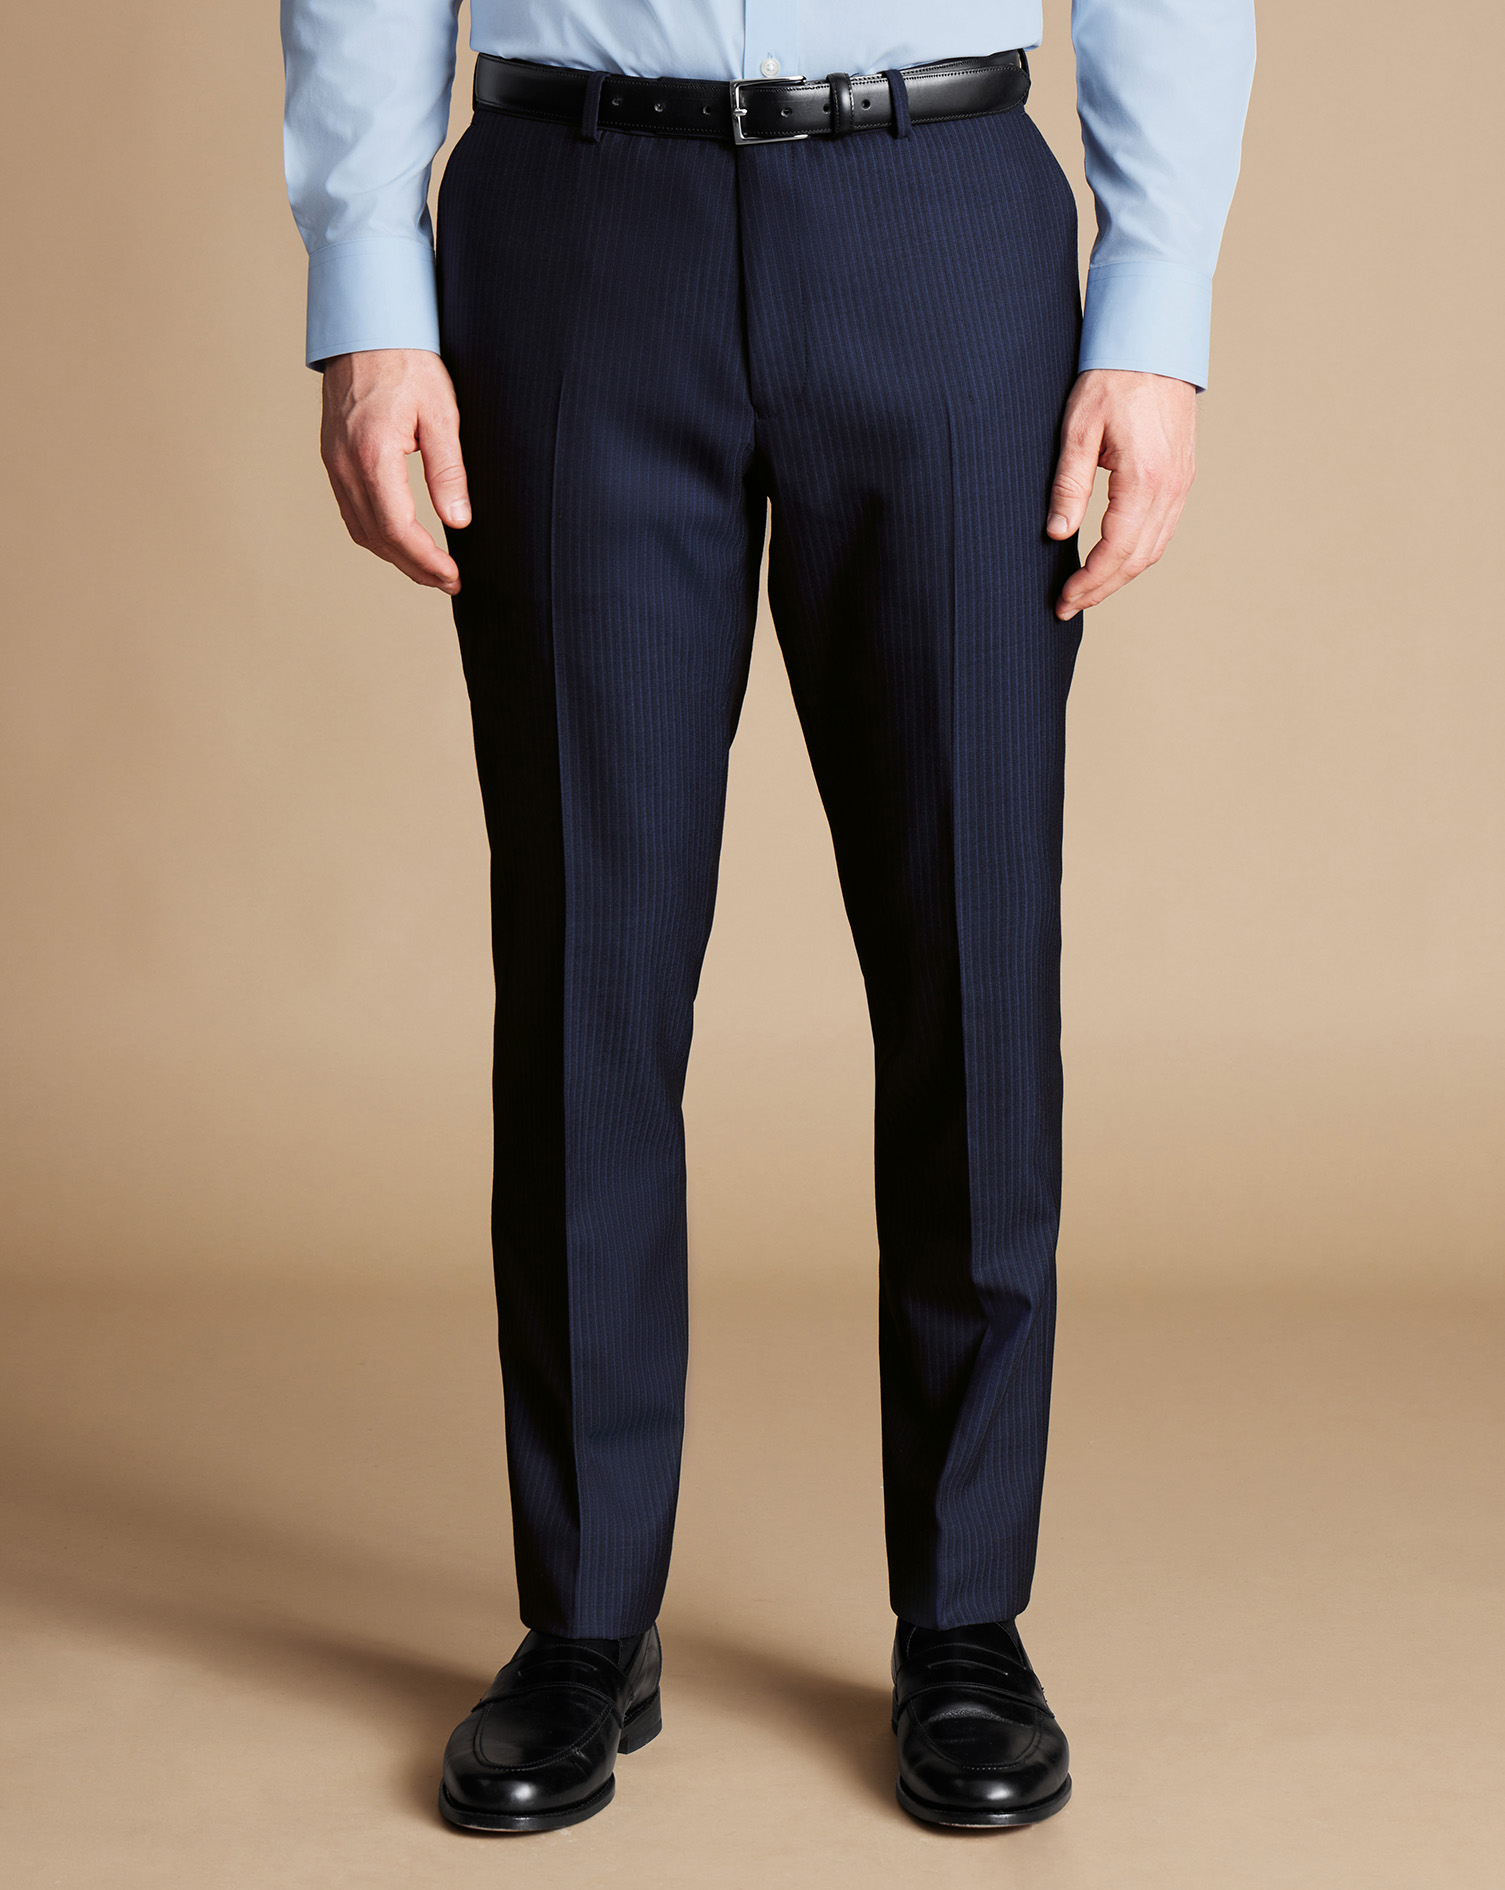 Men's Charles Tyrwhitt Stripe Suit Trousers - Navy Size 34/30
